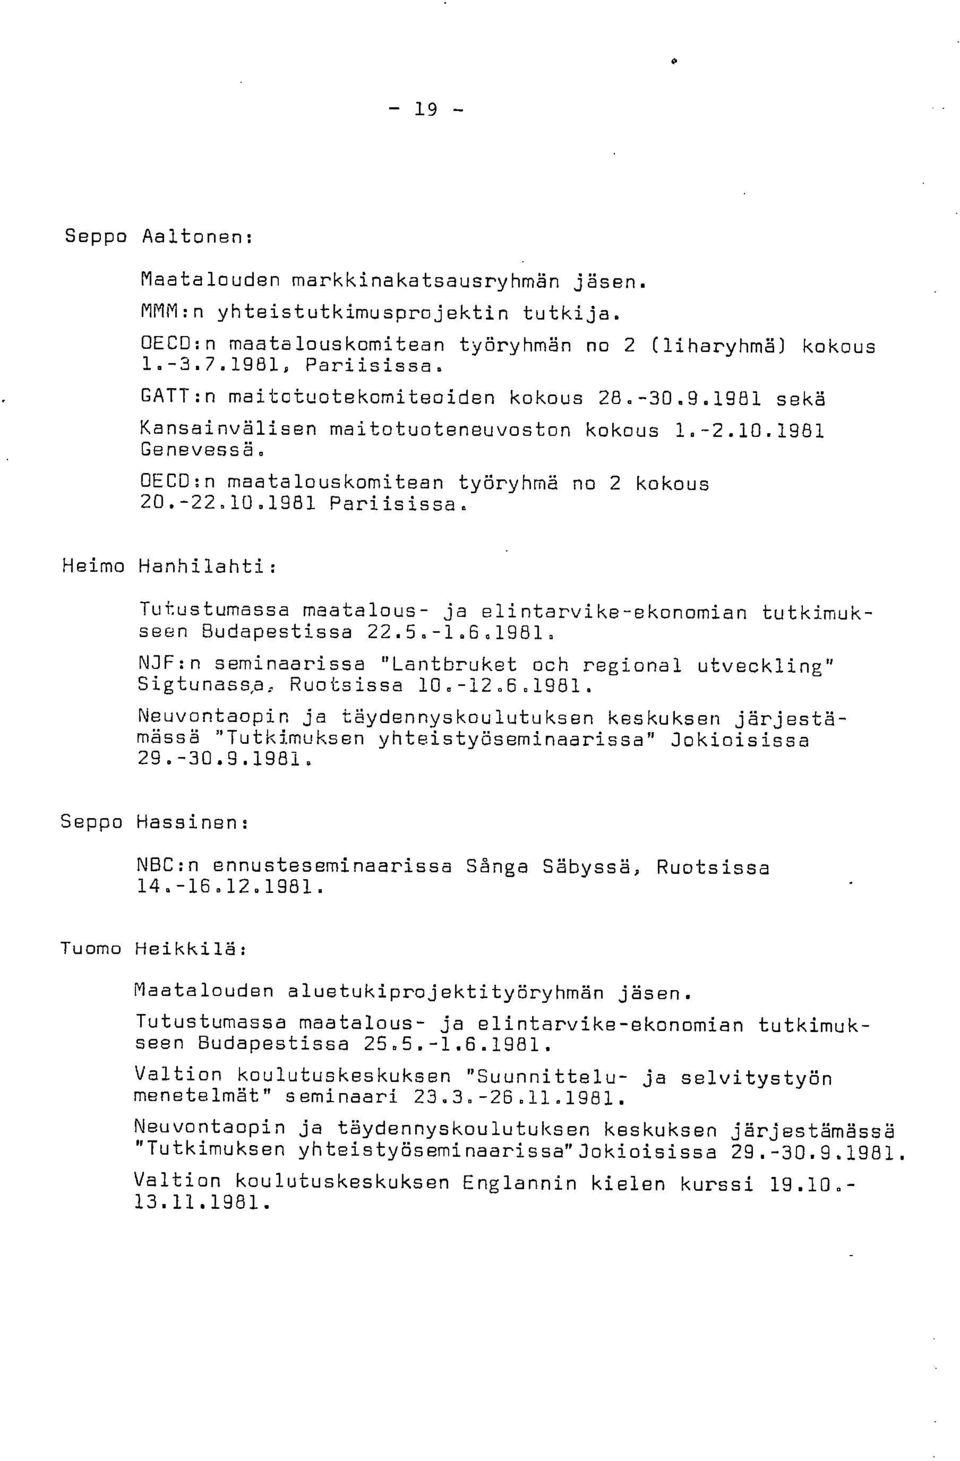 Heimo Hanhilahti: Tutustumassa maatalous- ja elintarvike-ekonomian tutkimukseen Budapestissa 22.5.-1.6.1981.